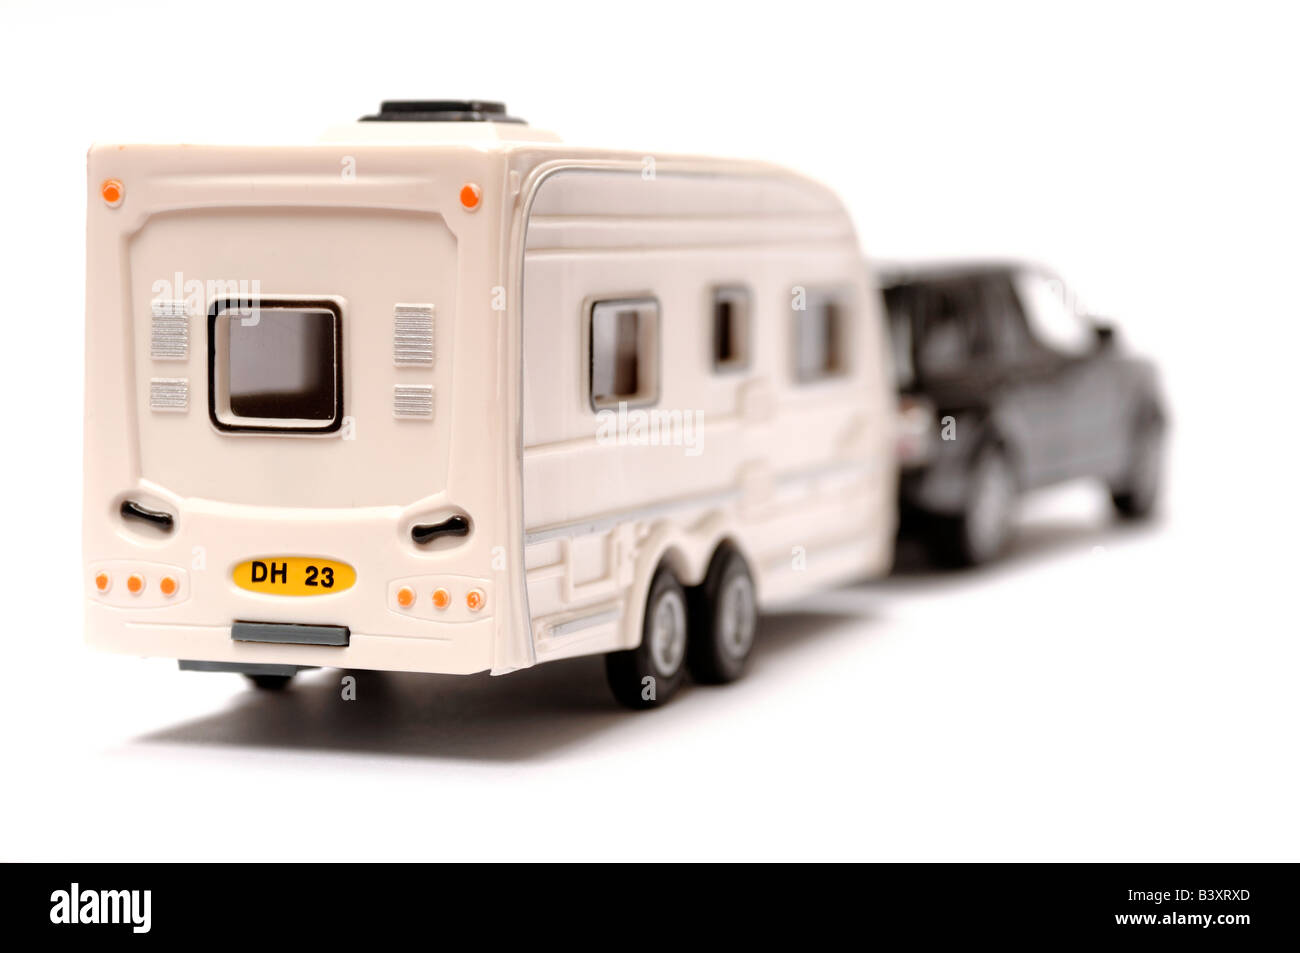 Toy car caravan immagini e fotografie stock ad alta risoluzione - Alamy